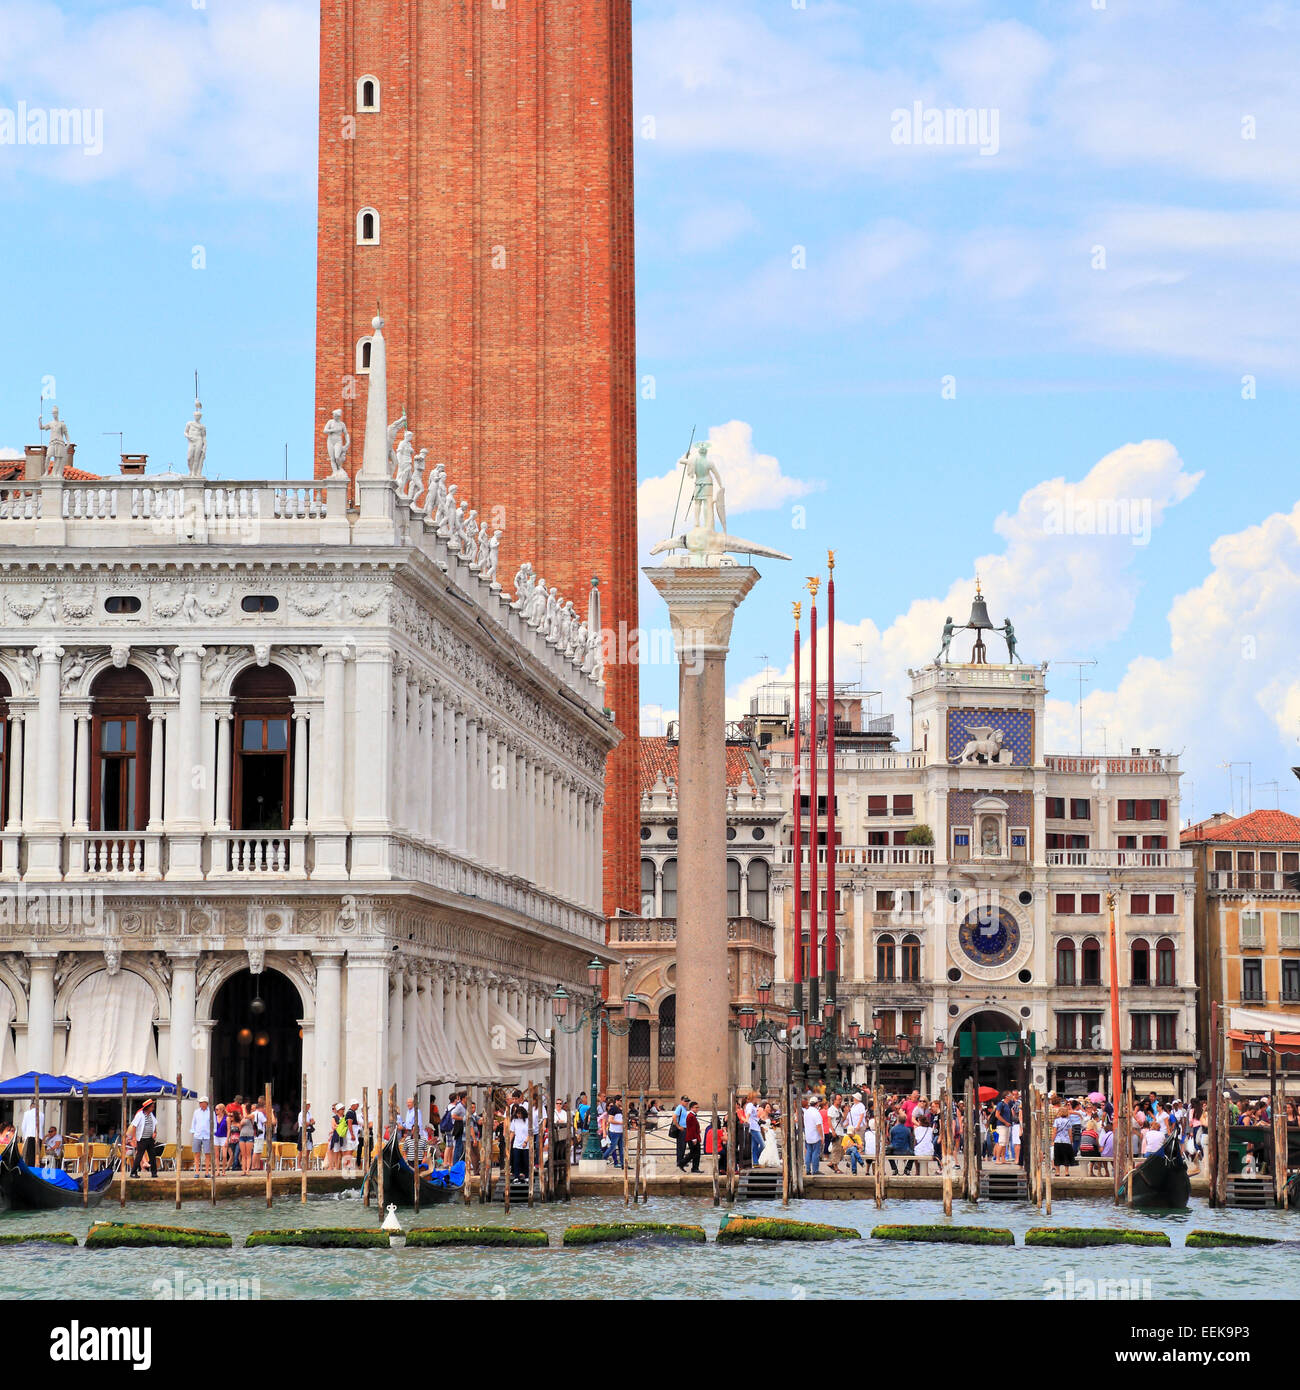 La plaza de San Marcos y el campanario, Venecia Italia: la Piazza San Marco, el Campanile, Venezia, Italia De:, Markusplatz Venedig Italien Foto de stock